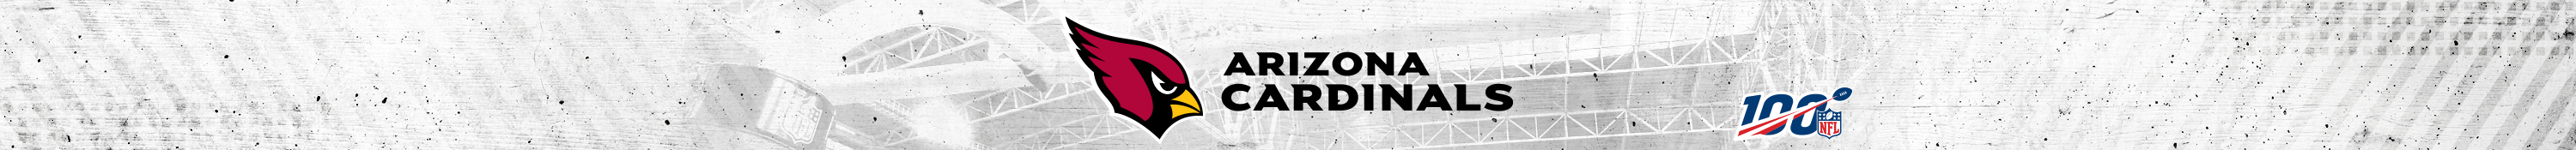 Arizona Cardinals Brand Logo